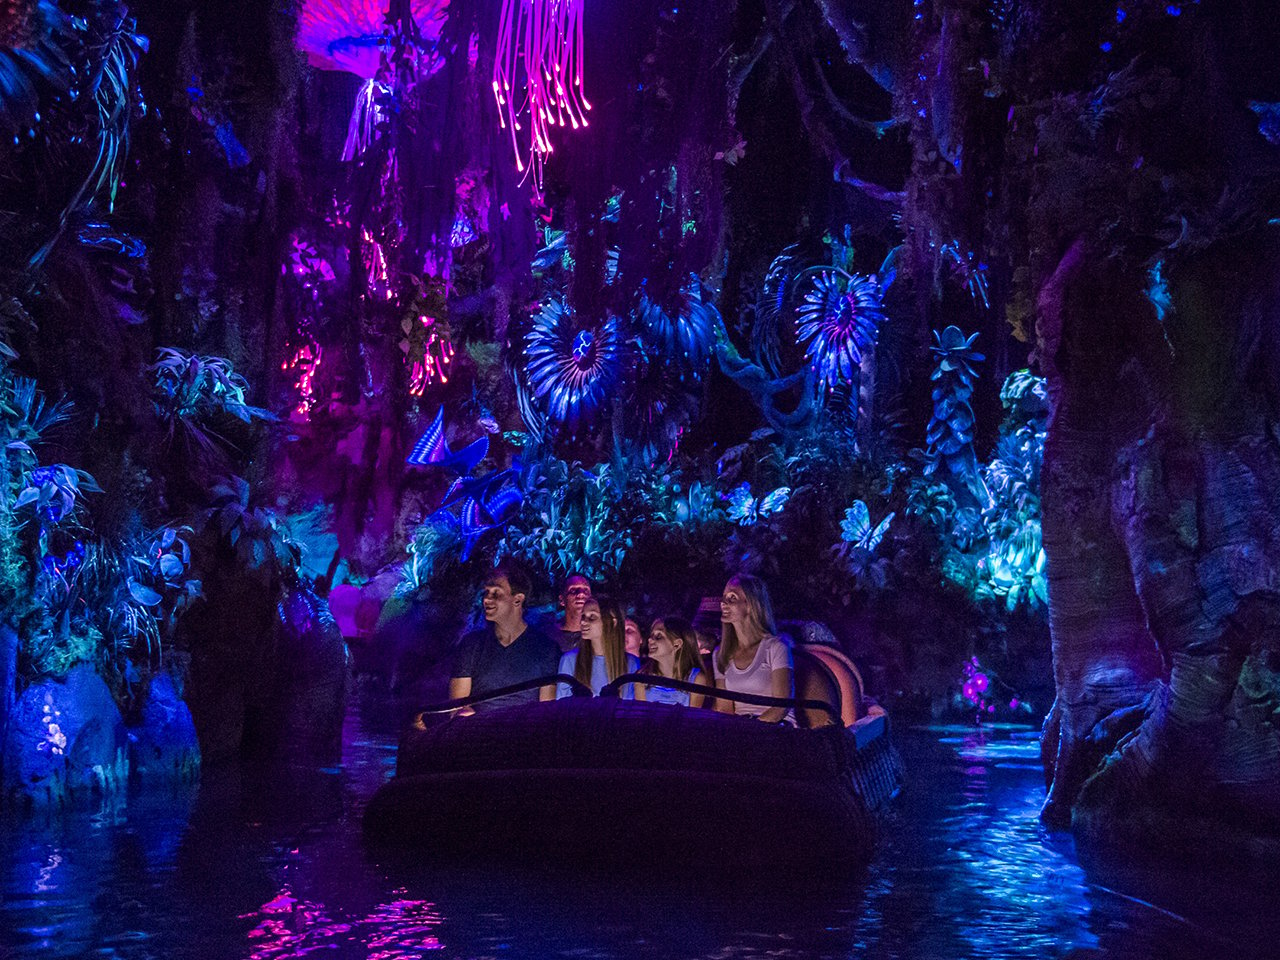 Na'vi River Journey, Pandora – The World of AVATAR 